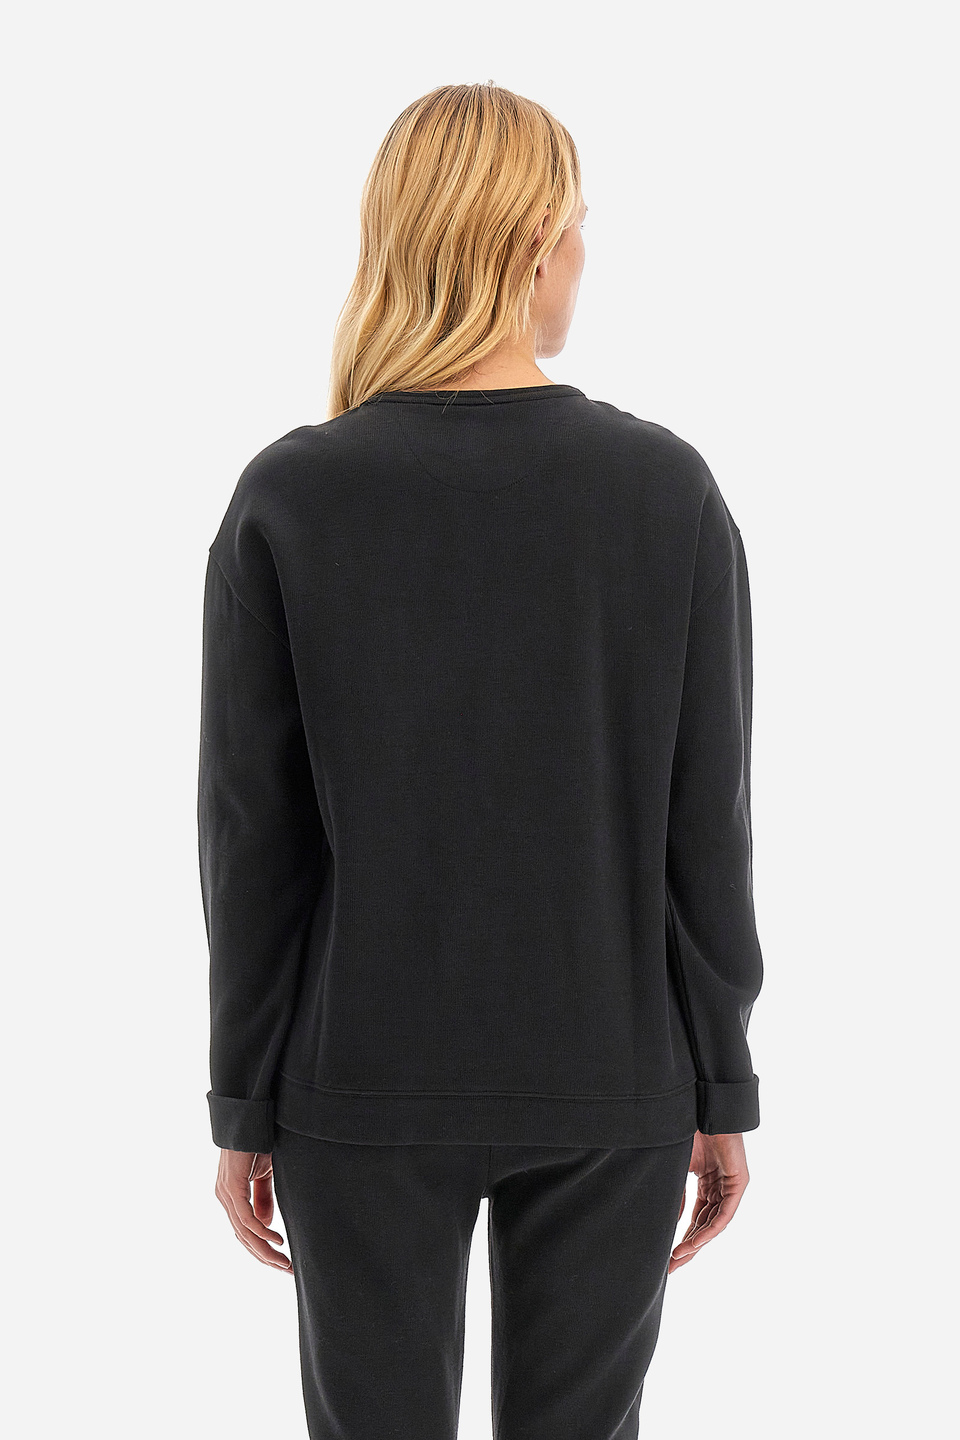 Damen -Sweatshirt regular fit - Wendie | La Martina - Official Online Shop